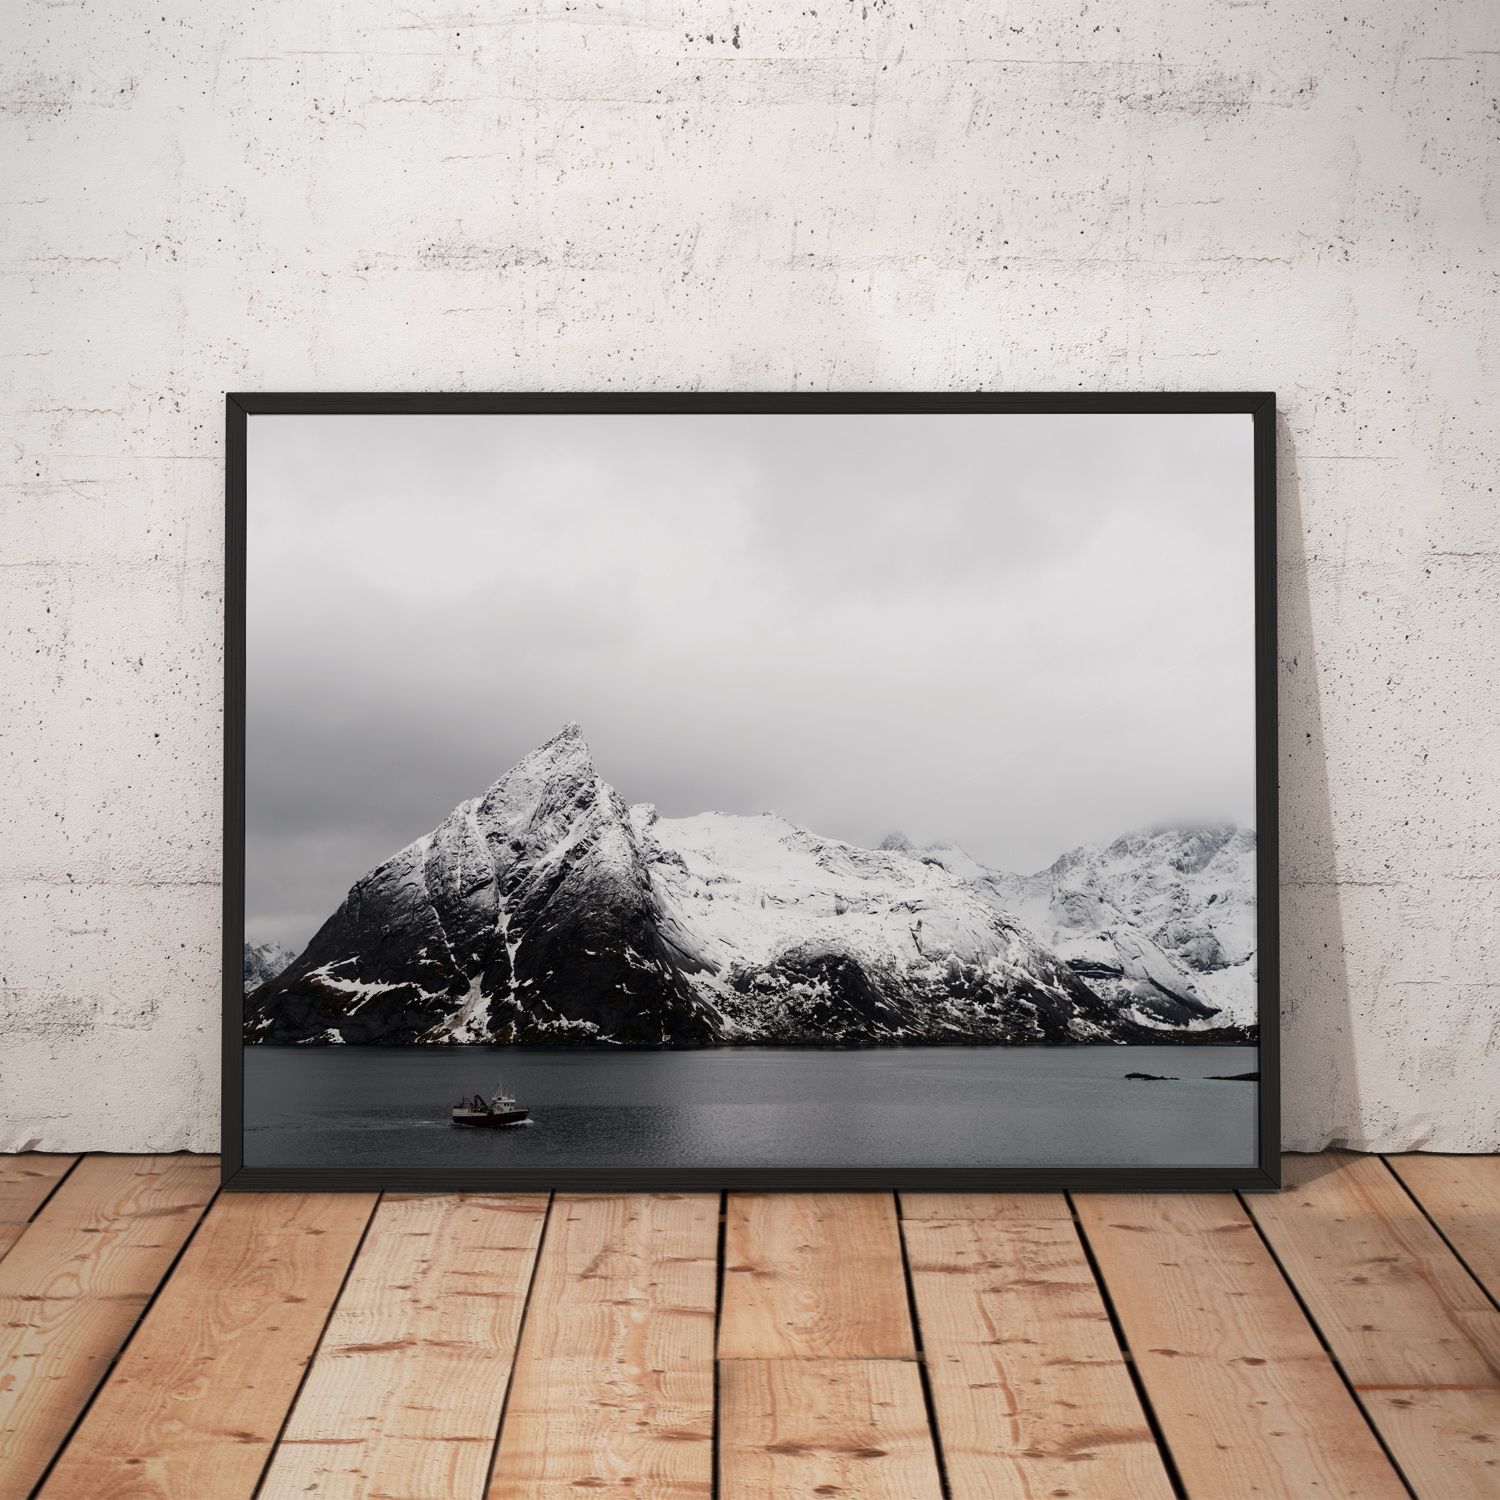 Постер "Snow capped mountain" Черный, Белый, Дерево A4 [21×30] , A3 [30x40], A2 [40x60], A1 [60x80]